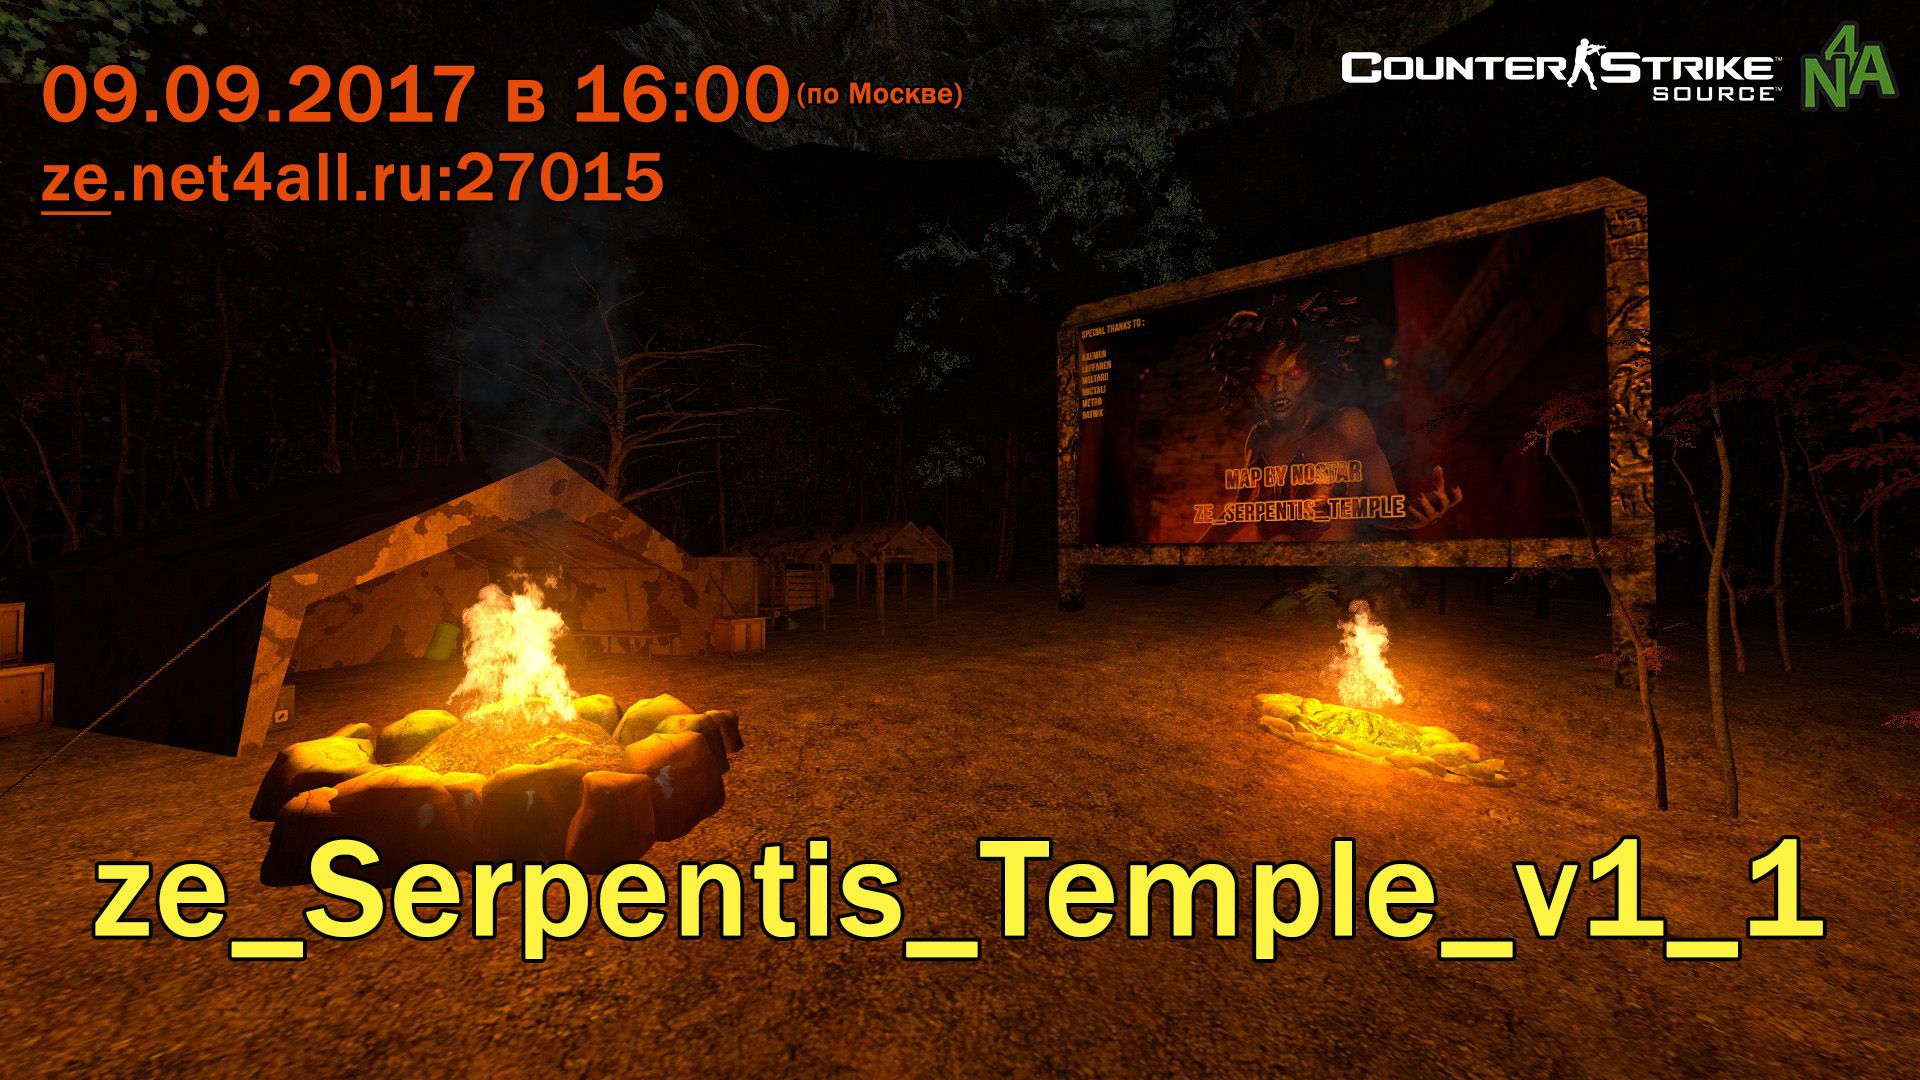 event_css_ze_Serpentis_Temple_v1_1.jpg